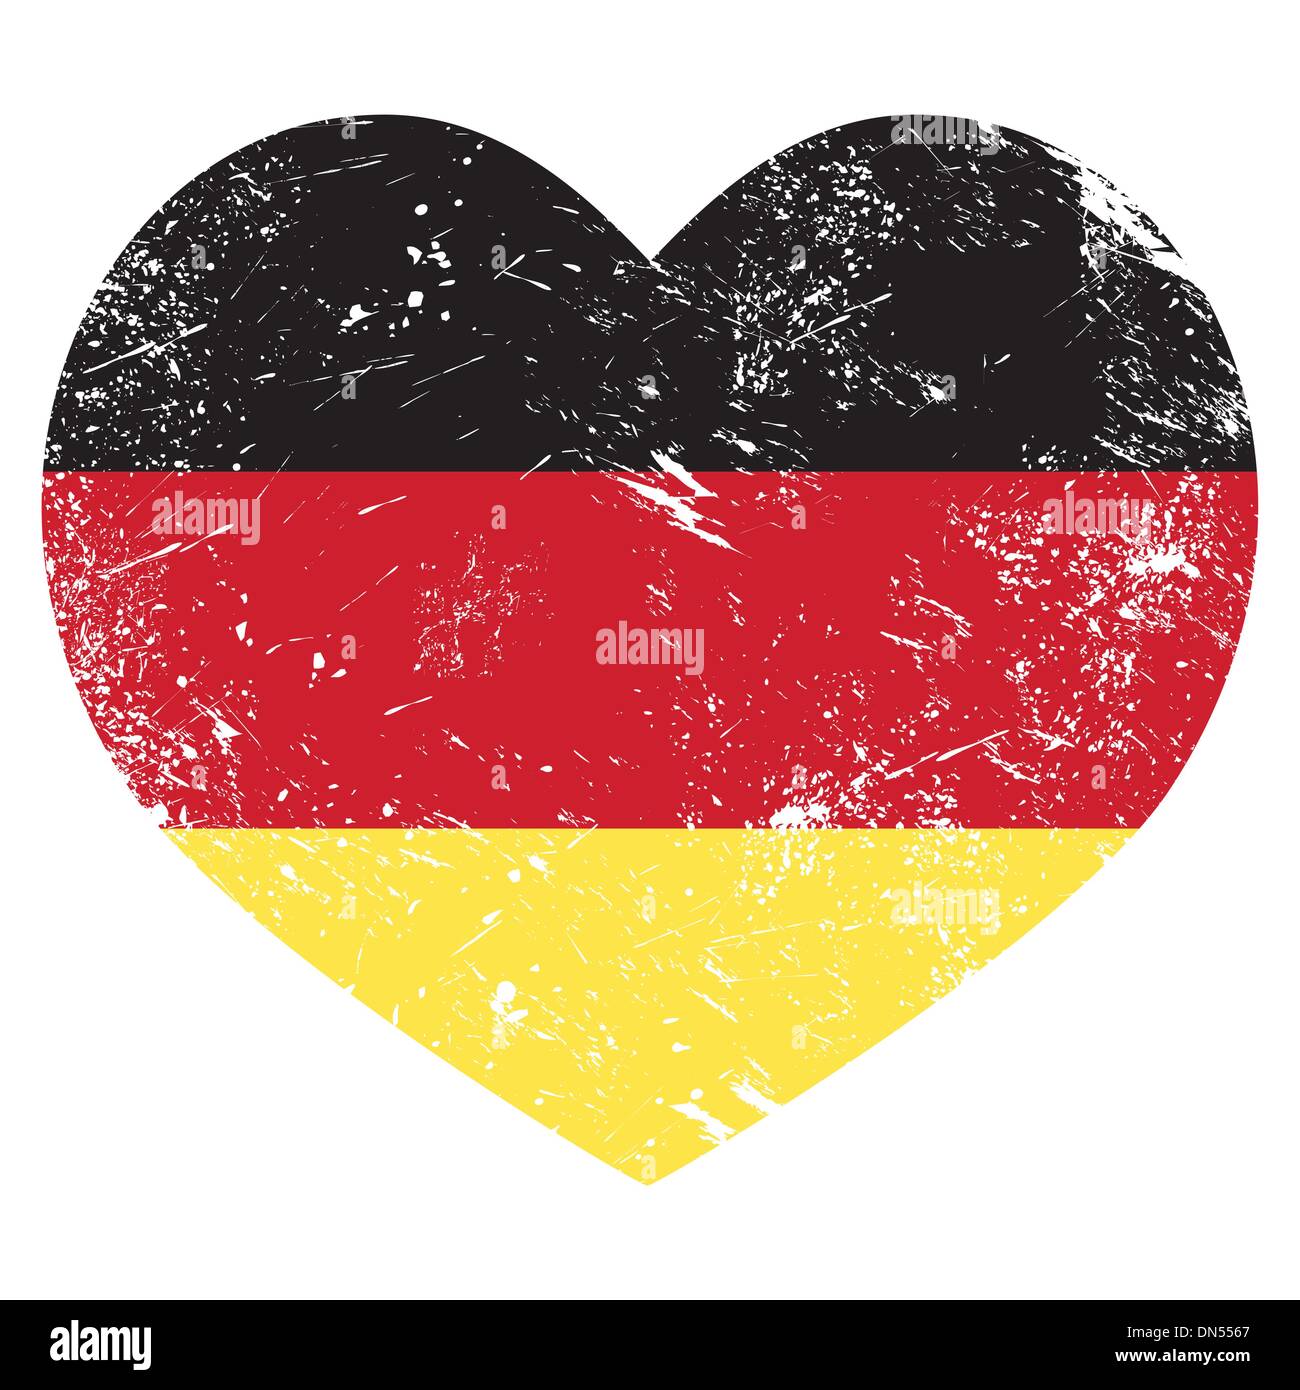 Germany heart shaped retro flag Stock Vector